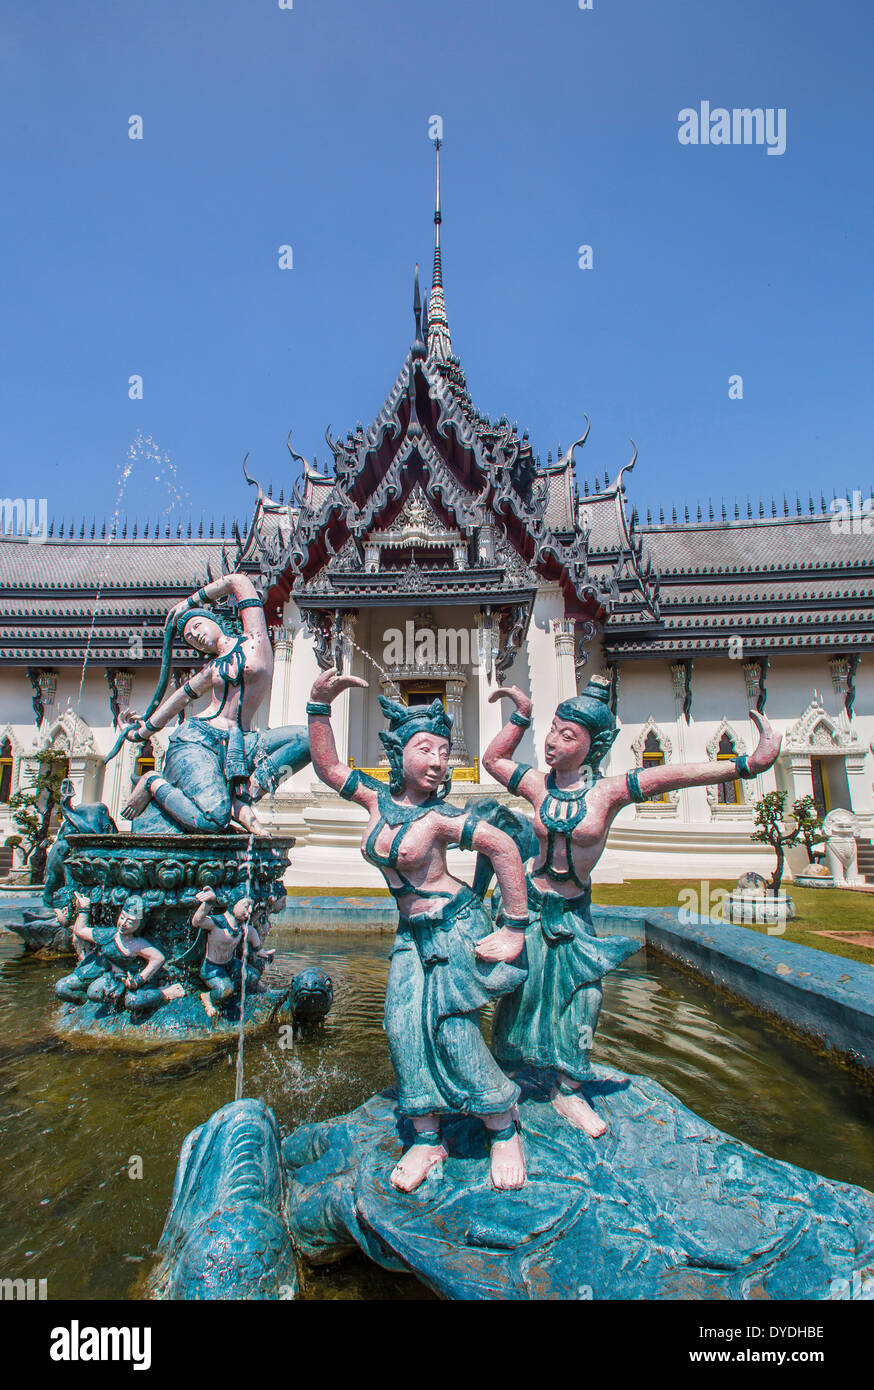 Asie Thaïlande Bangkok l'ancienne Siam Park Ayutthaya Sanphet Prasat palace park culture colorée architecture voyage touristique Banque D'Images